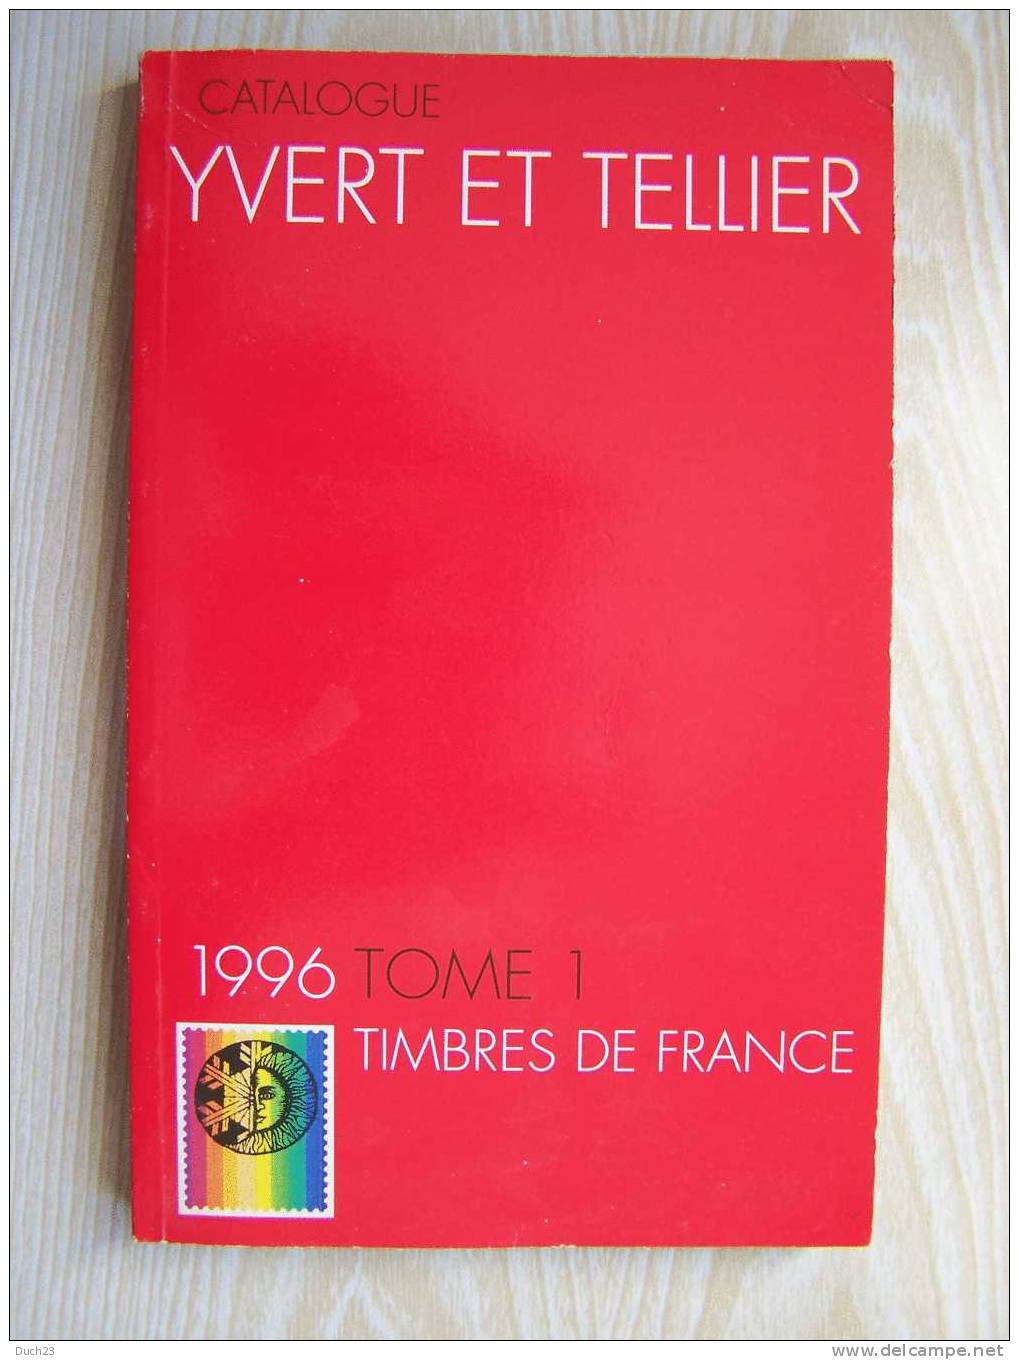 CATALOGUE DE COTATION YVERT ET TELLIER ANNEE 1996 TOME 1   TRES BON ETAT   REF CD - France